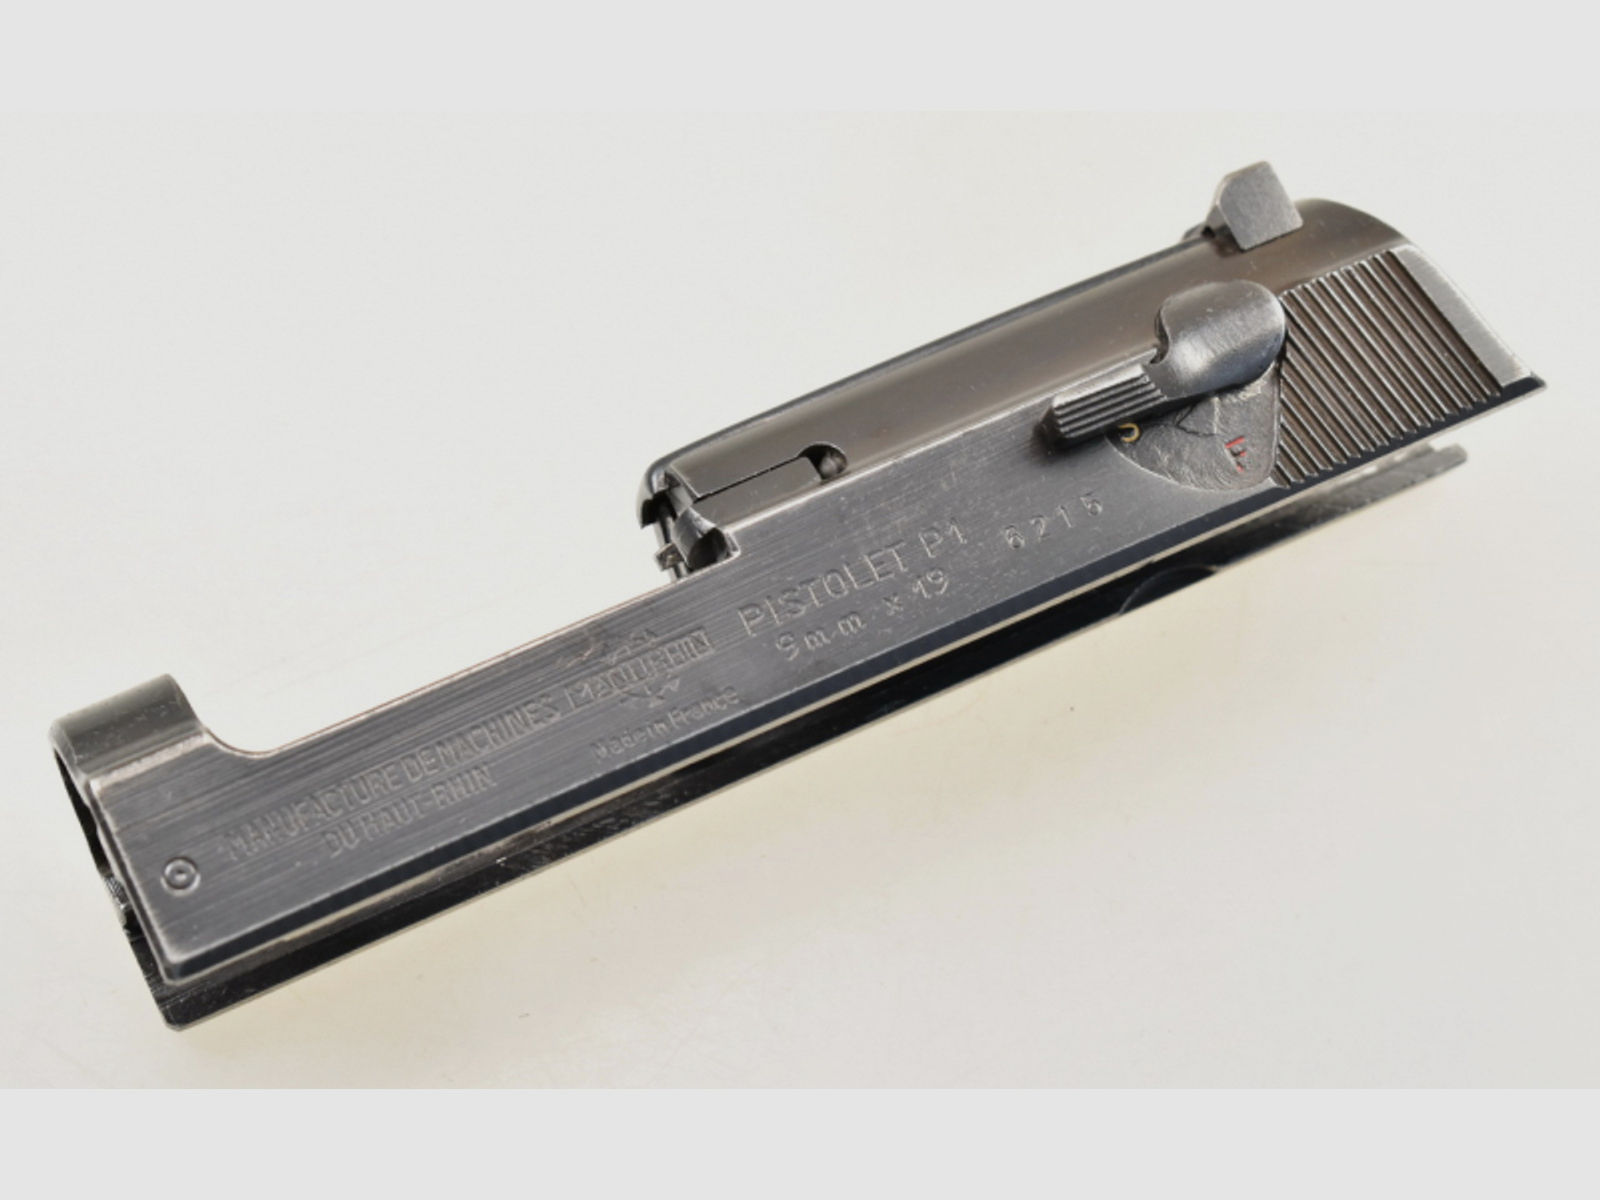 Kompletter Verschluß / Schlitten zur MANURHIN " Walther P1 " Pistole des WEST - BERLINER ZOLLS